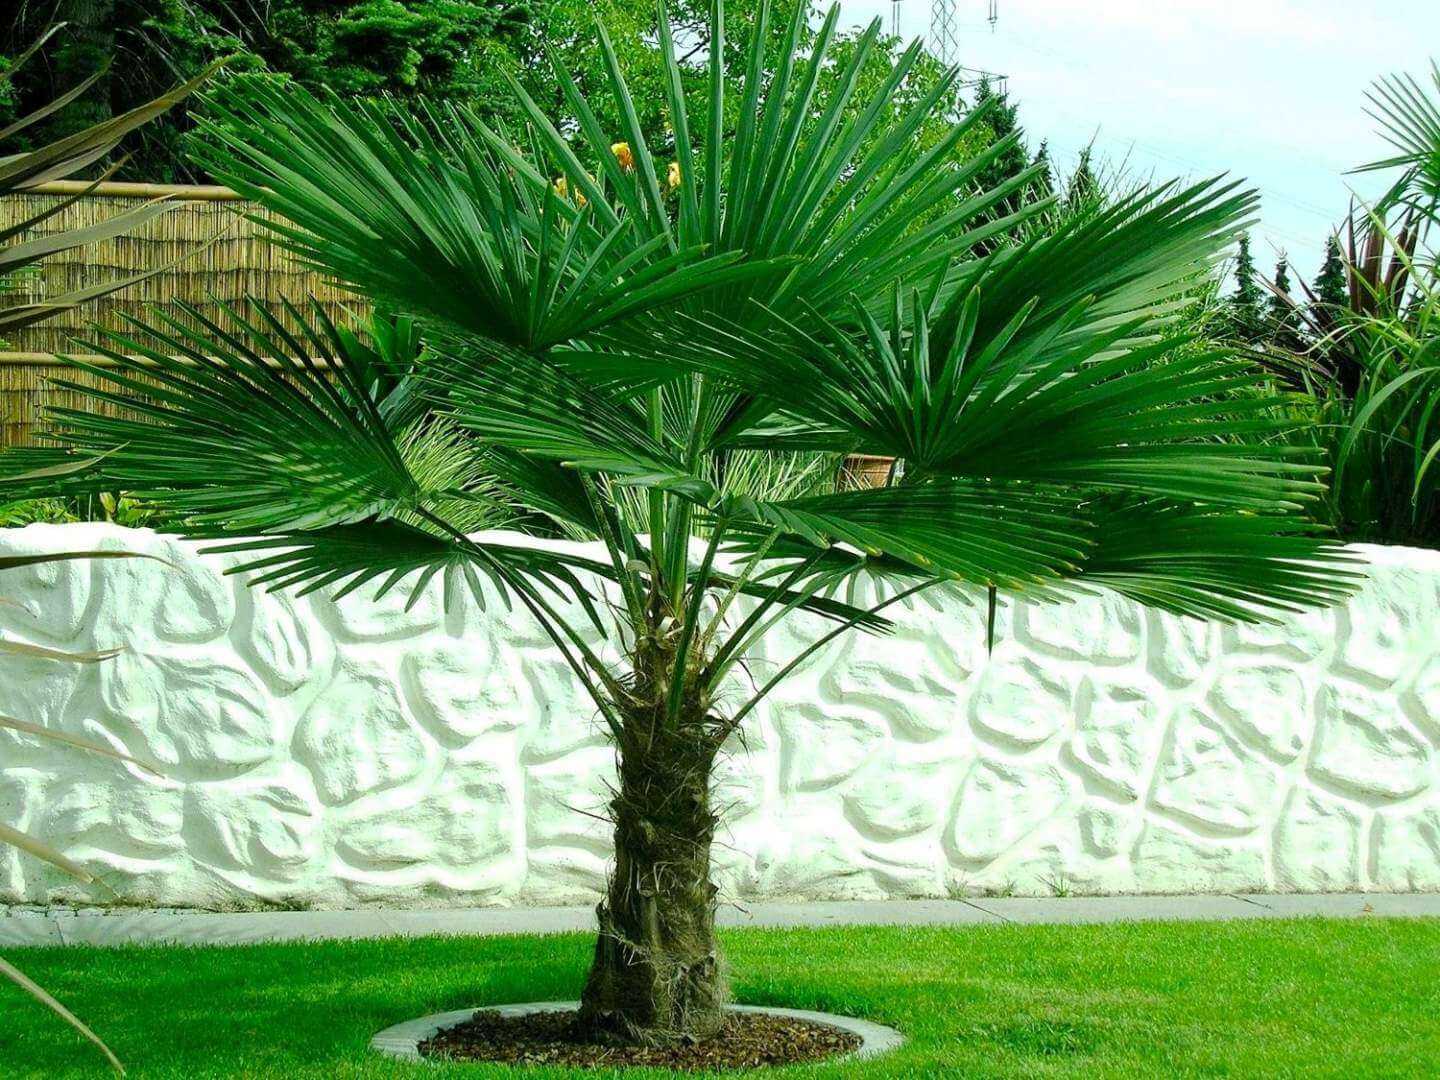 Трахикарпус пальма, которую можно выращивать дома! популярные виды, фото, уход selo.guru — интернет портал о сельском хозяйстве